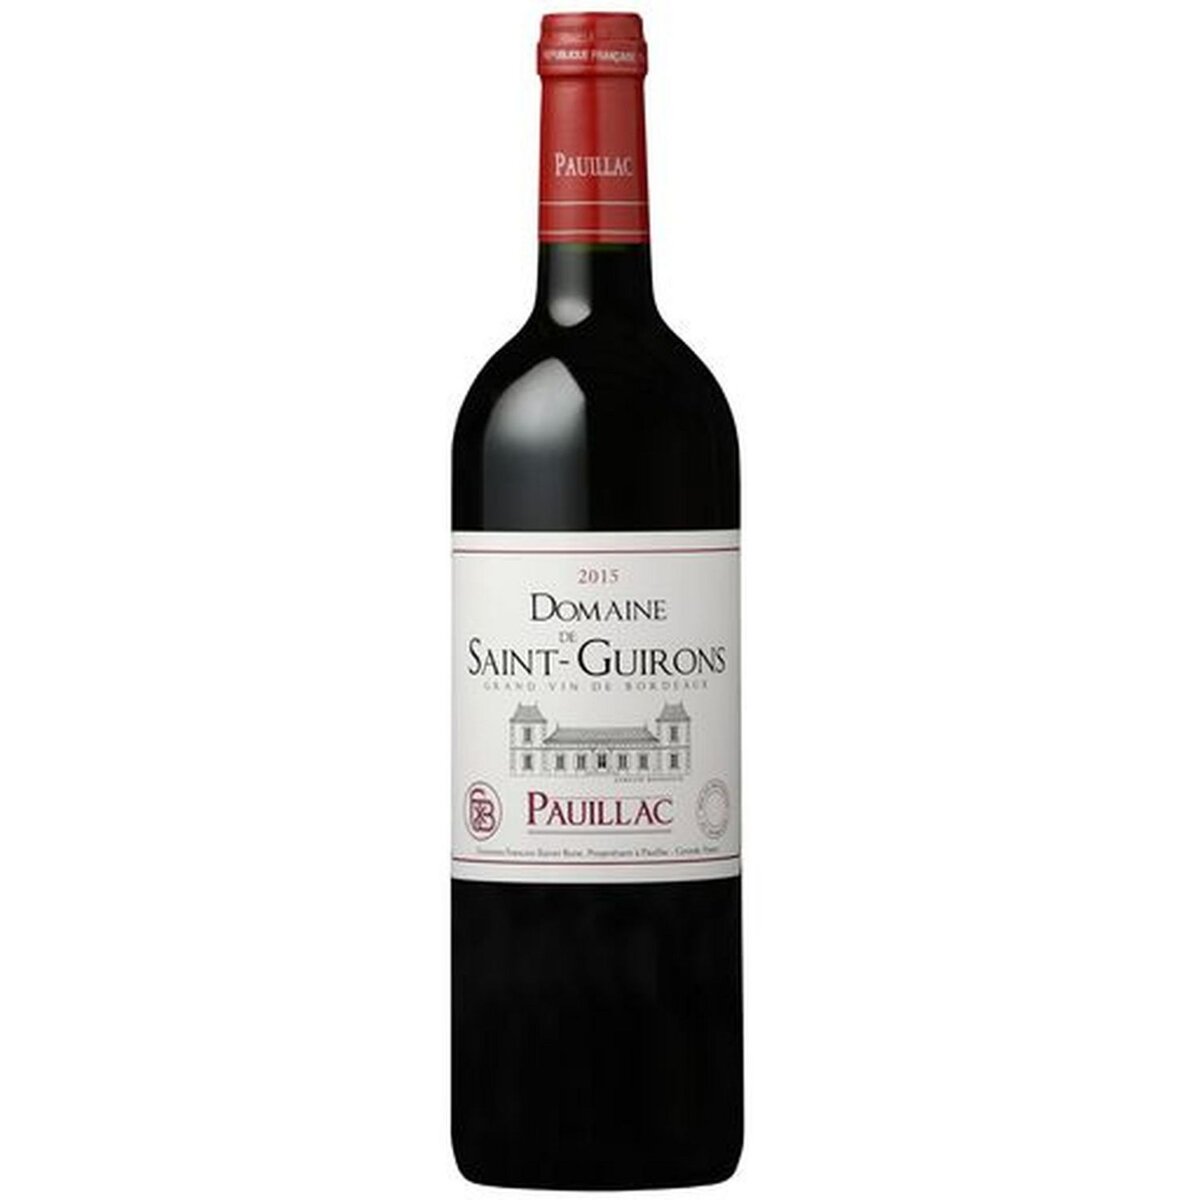 Vin rouge AOP Pauillac Domaine Saint-Guirons 2015 75cl